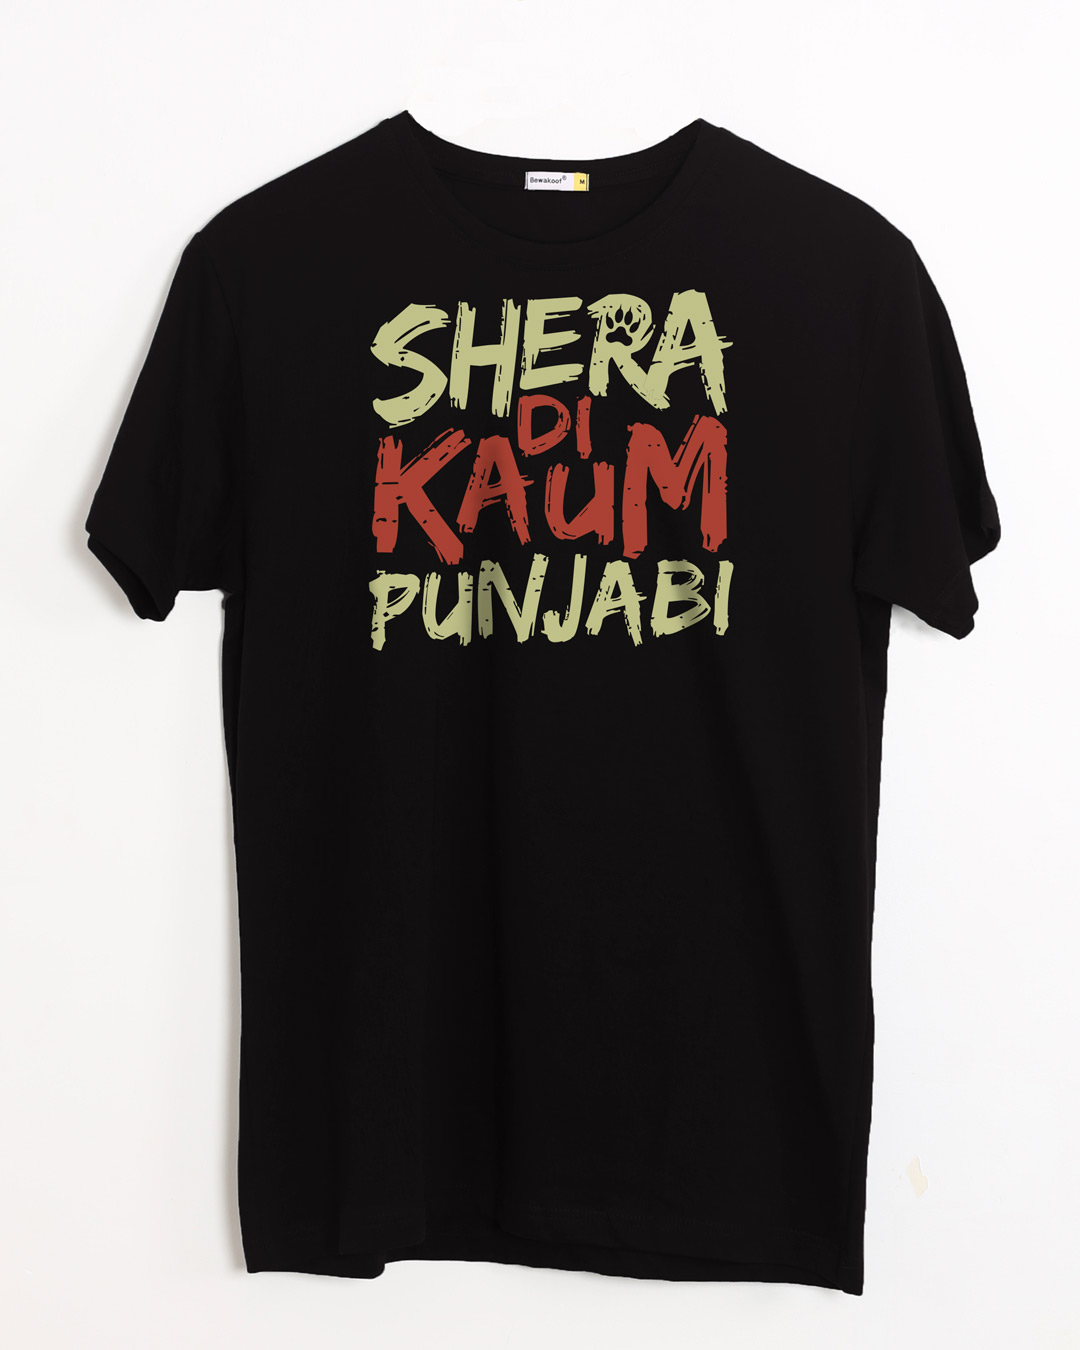 punjabi t shirts online india